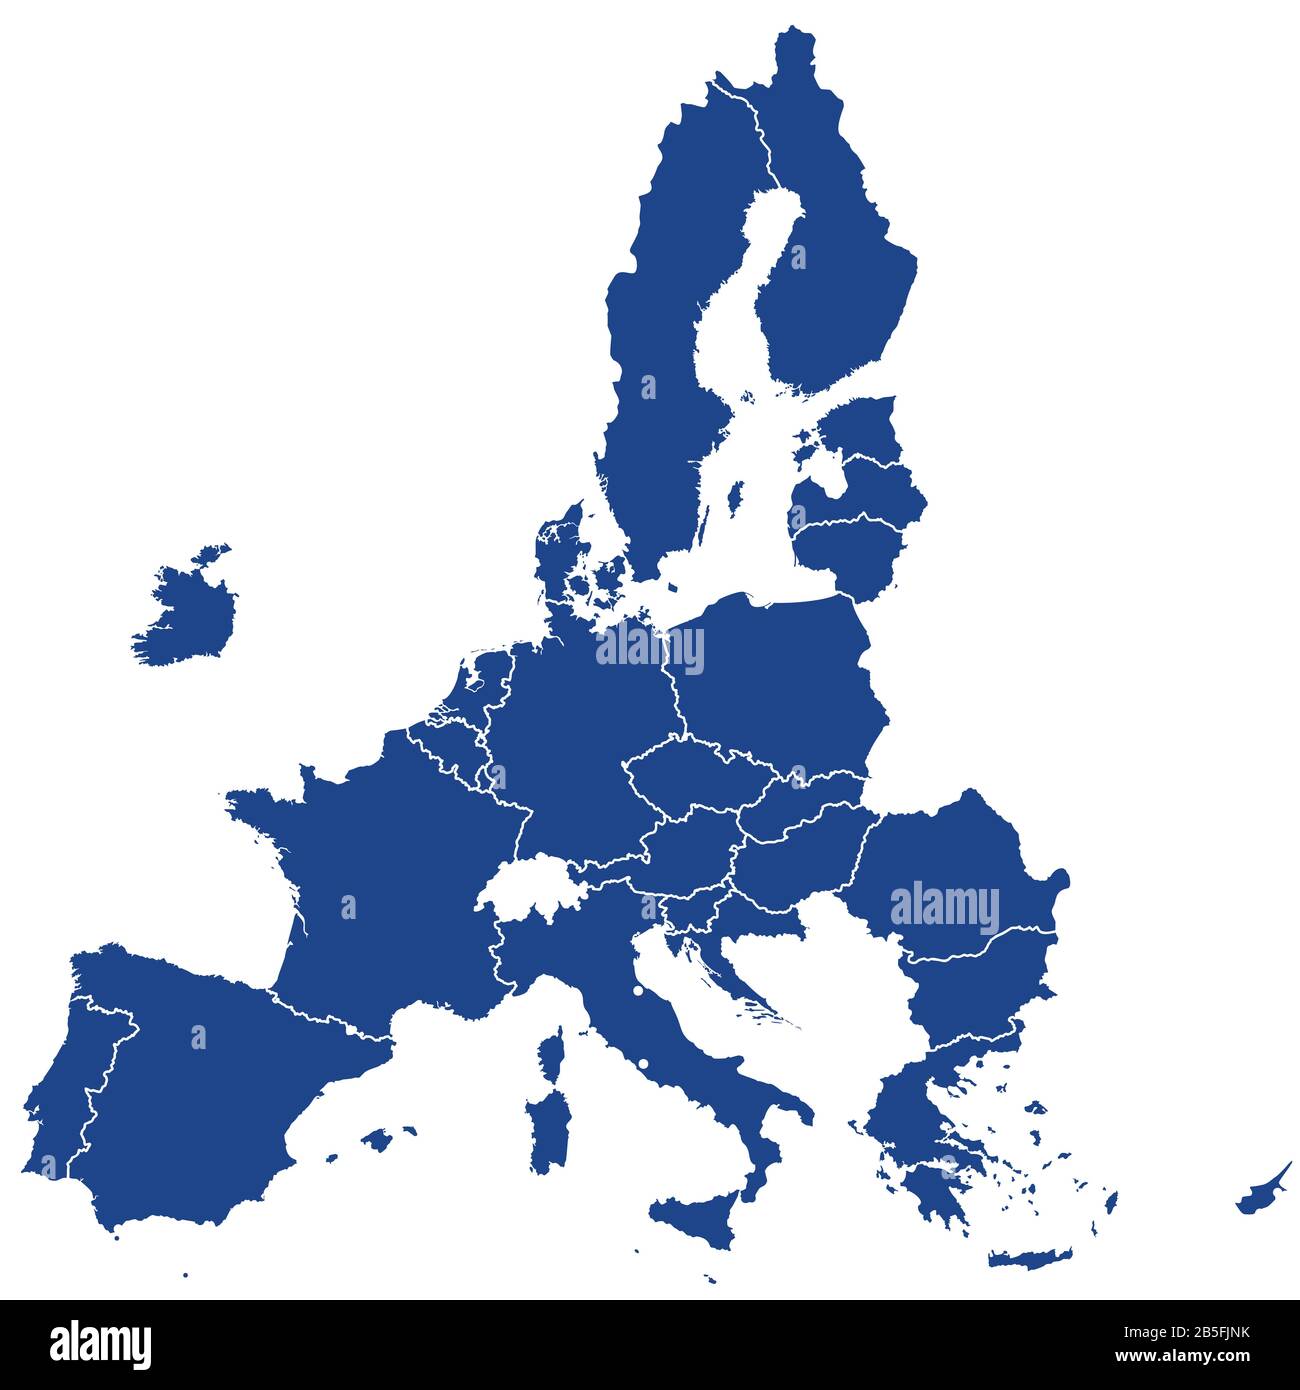 Mitgliedsstaaten der Europäischen Union nach Brexit, blaue Silhouetten. 27 EU-Mitgliedsstaaten, nachdem Großbritannien 2020 abgereist war. Stockfoto